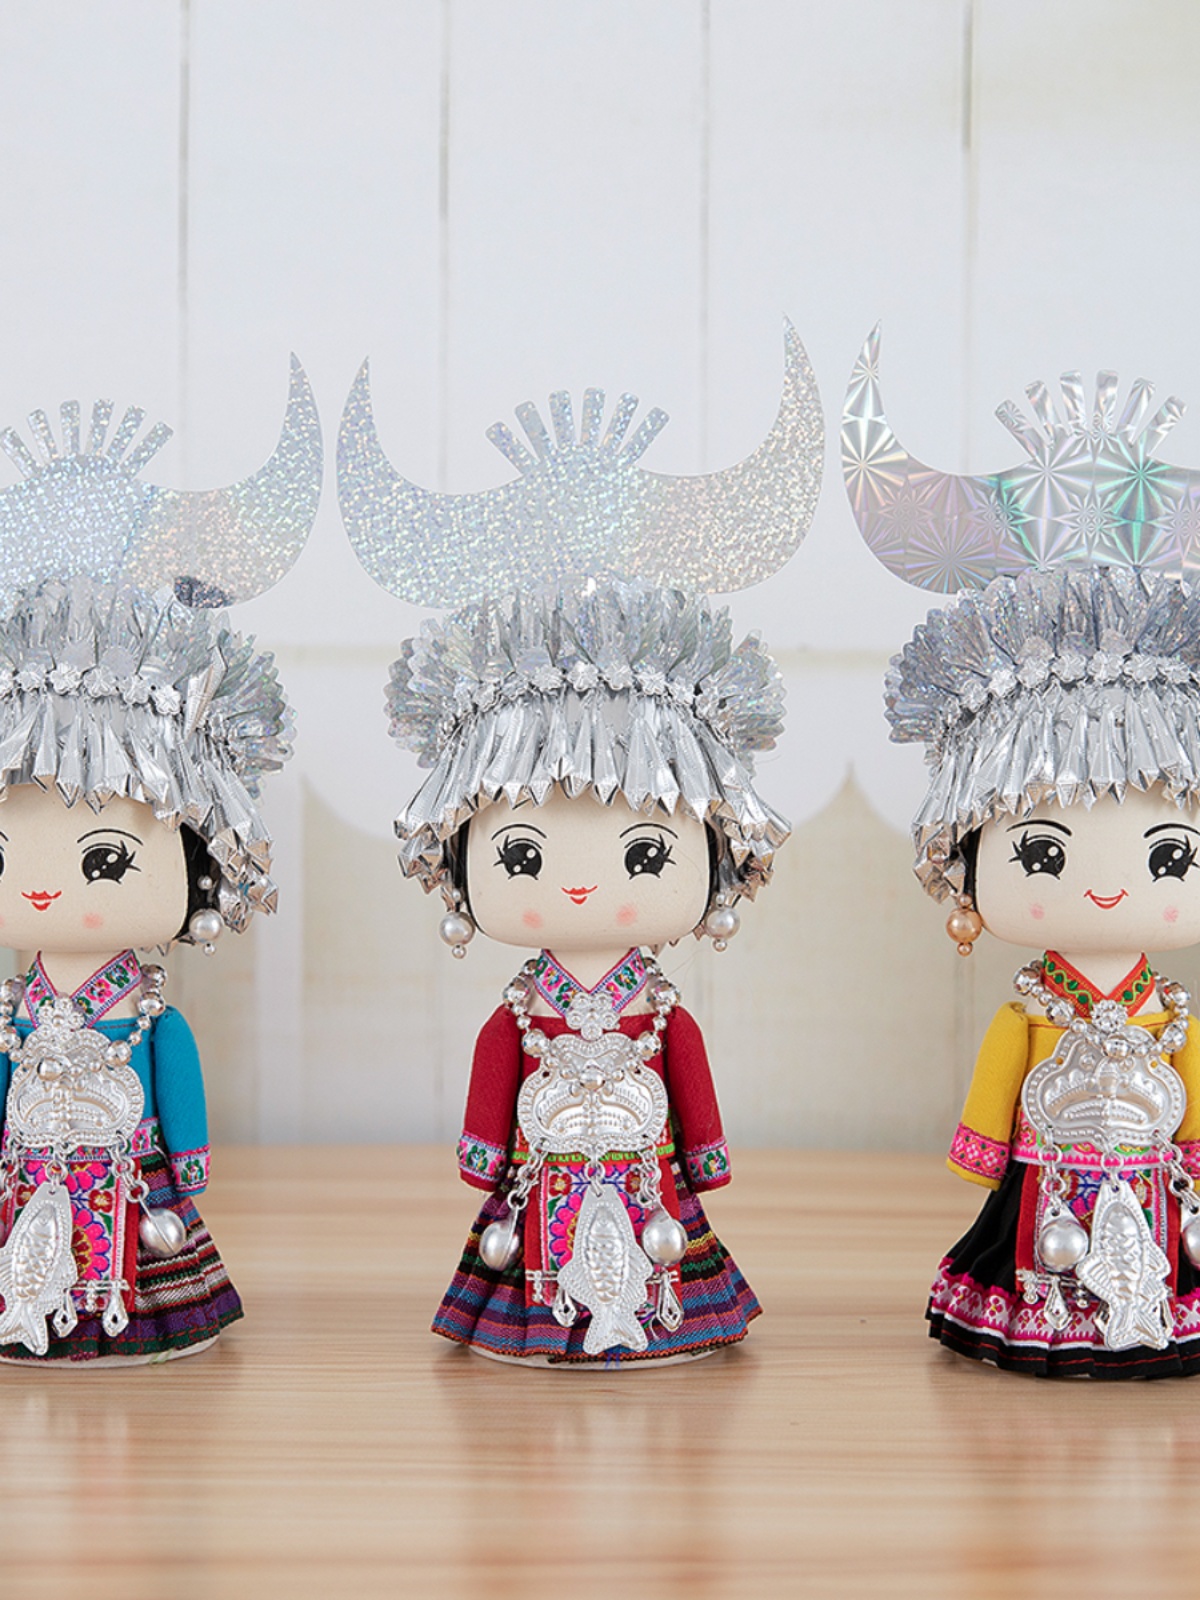 广西少数民族壮族苗族特色饰品摆件送礼木偶娃娃纯手工艺品伴手礼